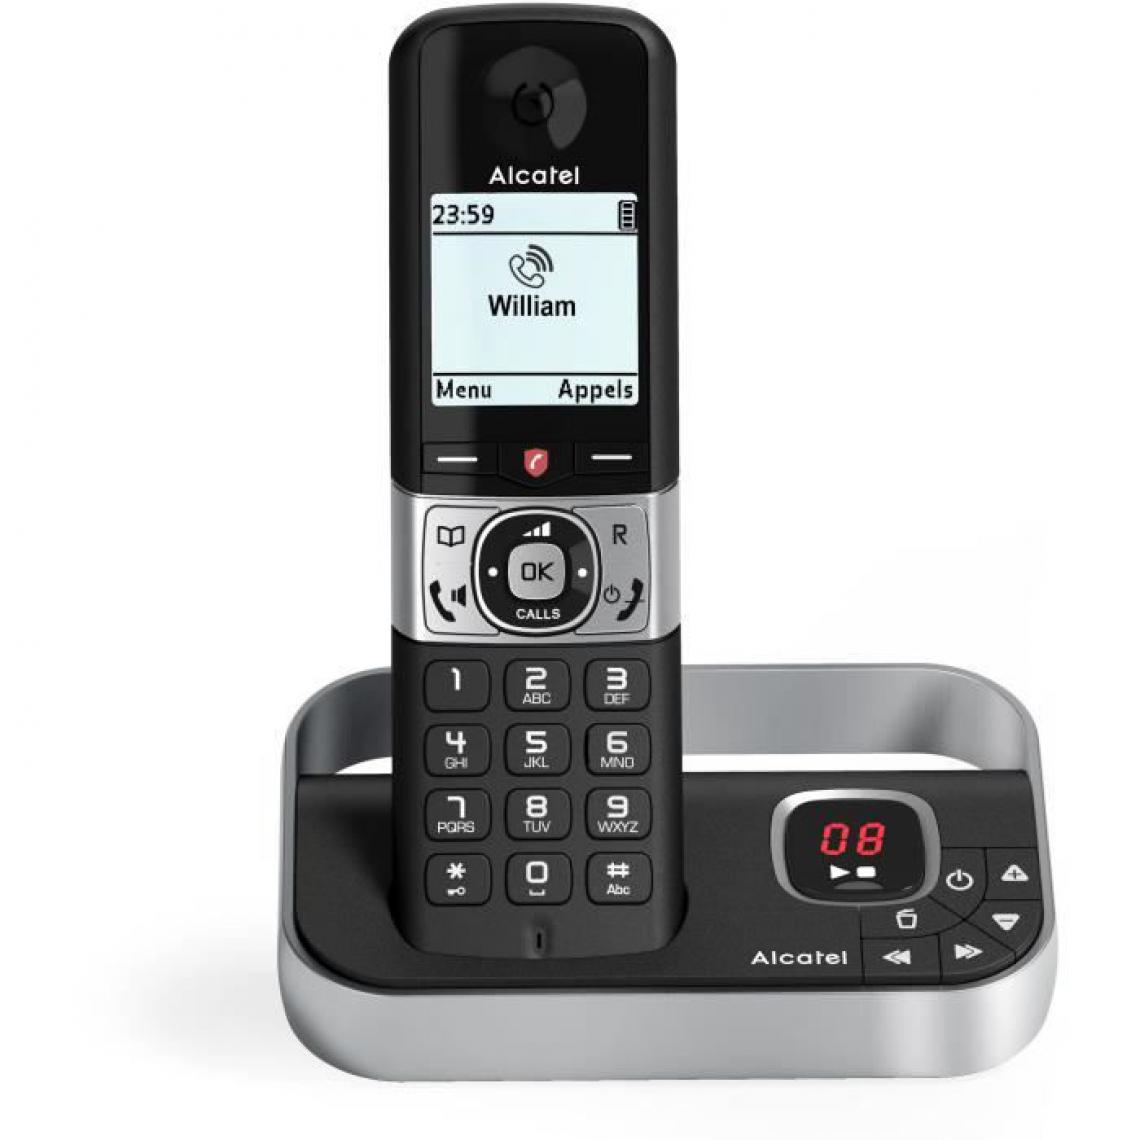 Alcatel - ALCATEL - F890 voice solo repondeur noir - Téléphone fixe-répondeur